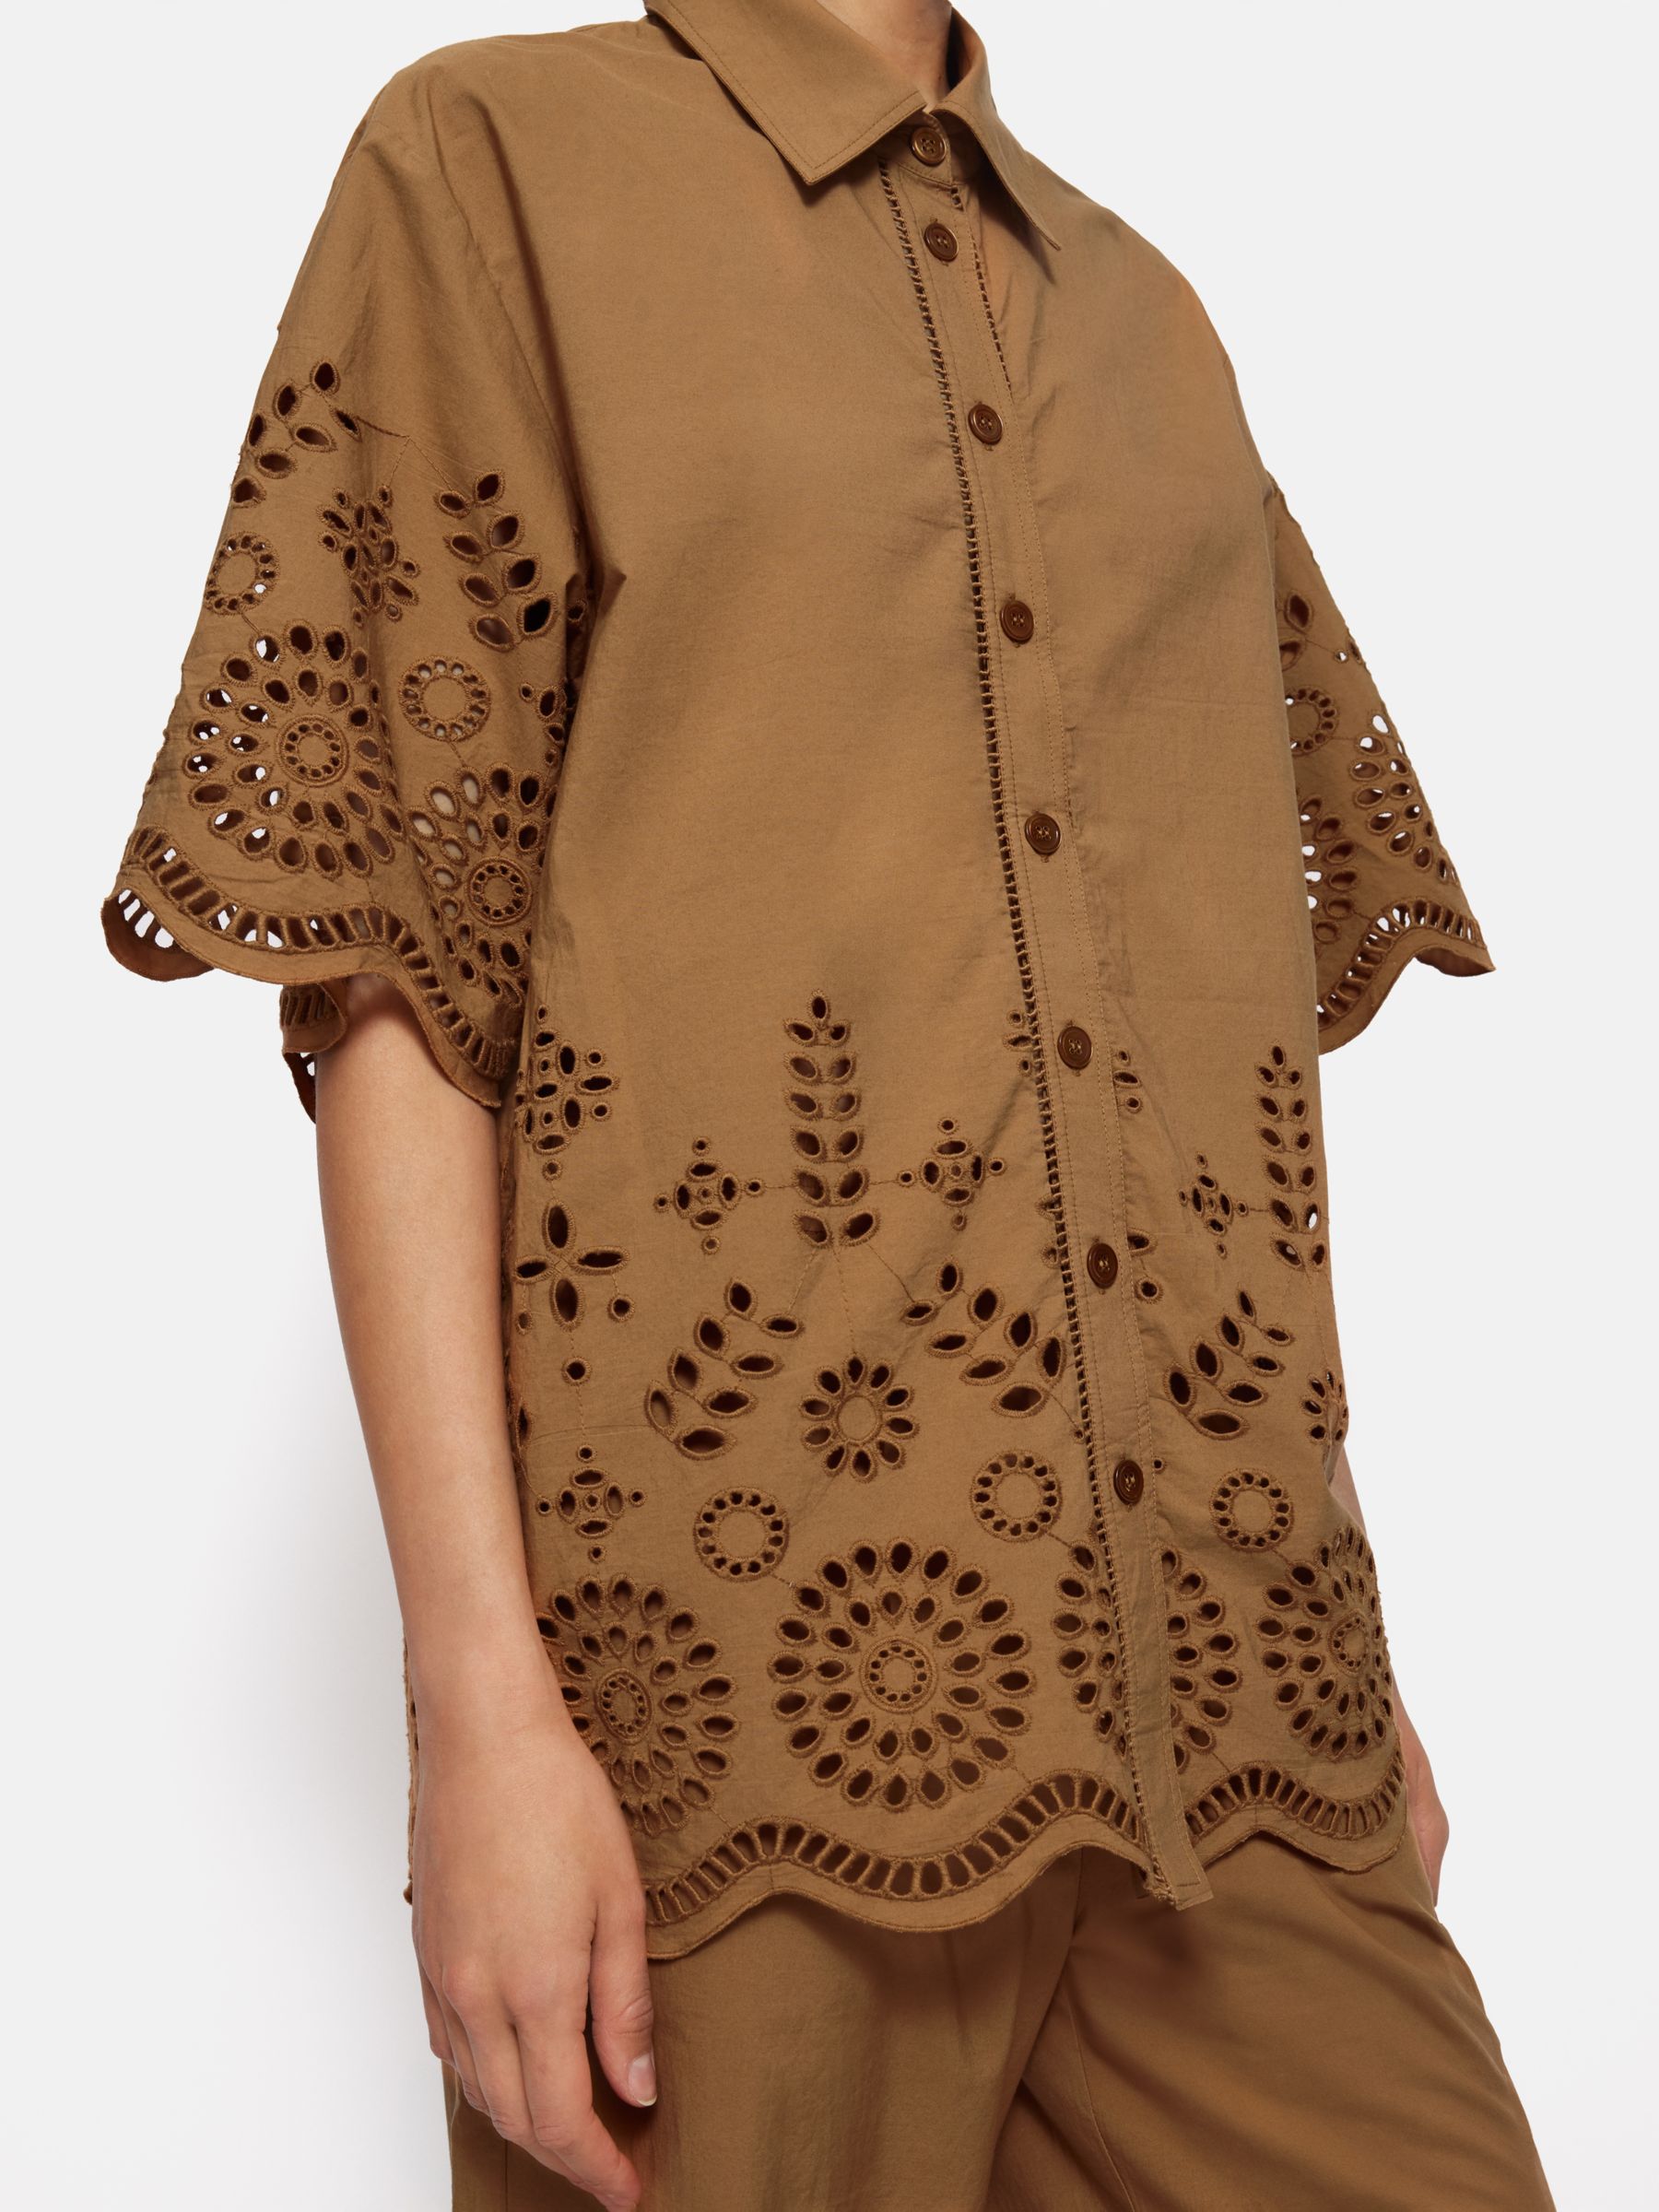 Jigsaw Cotton Broderie Half Sleeve Shirt, Camel, S